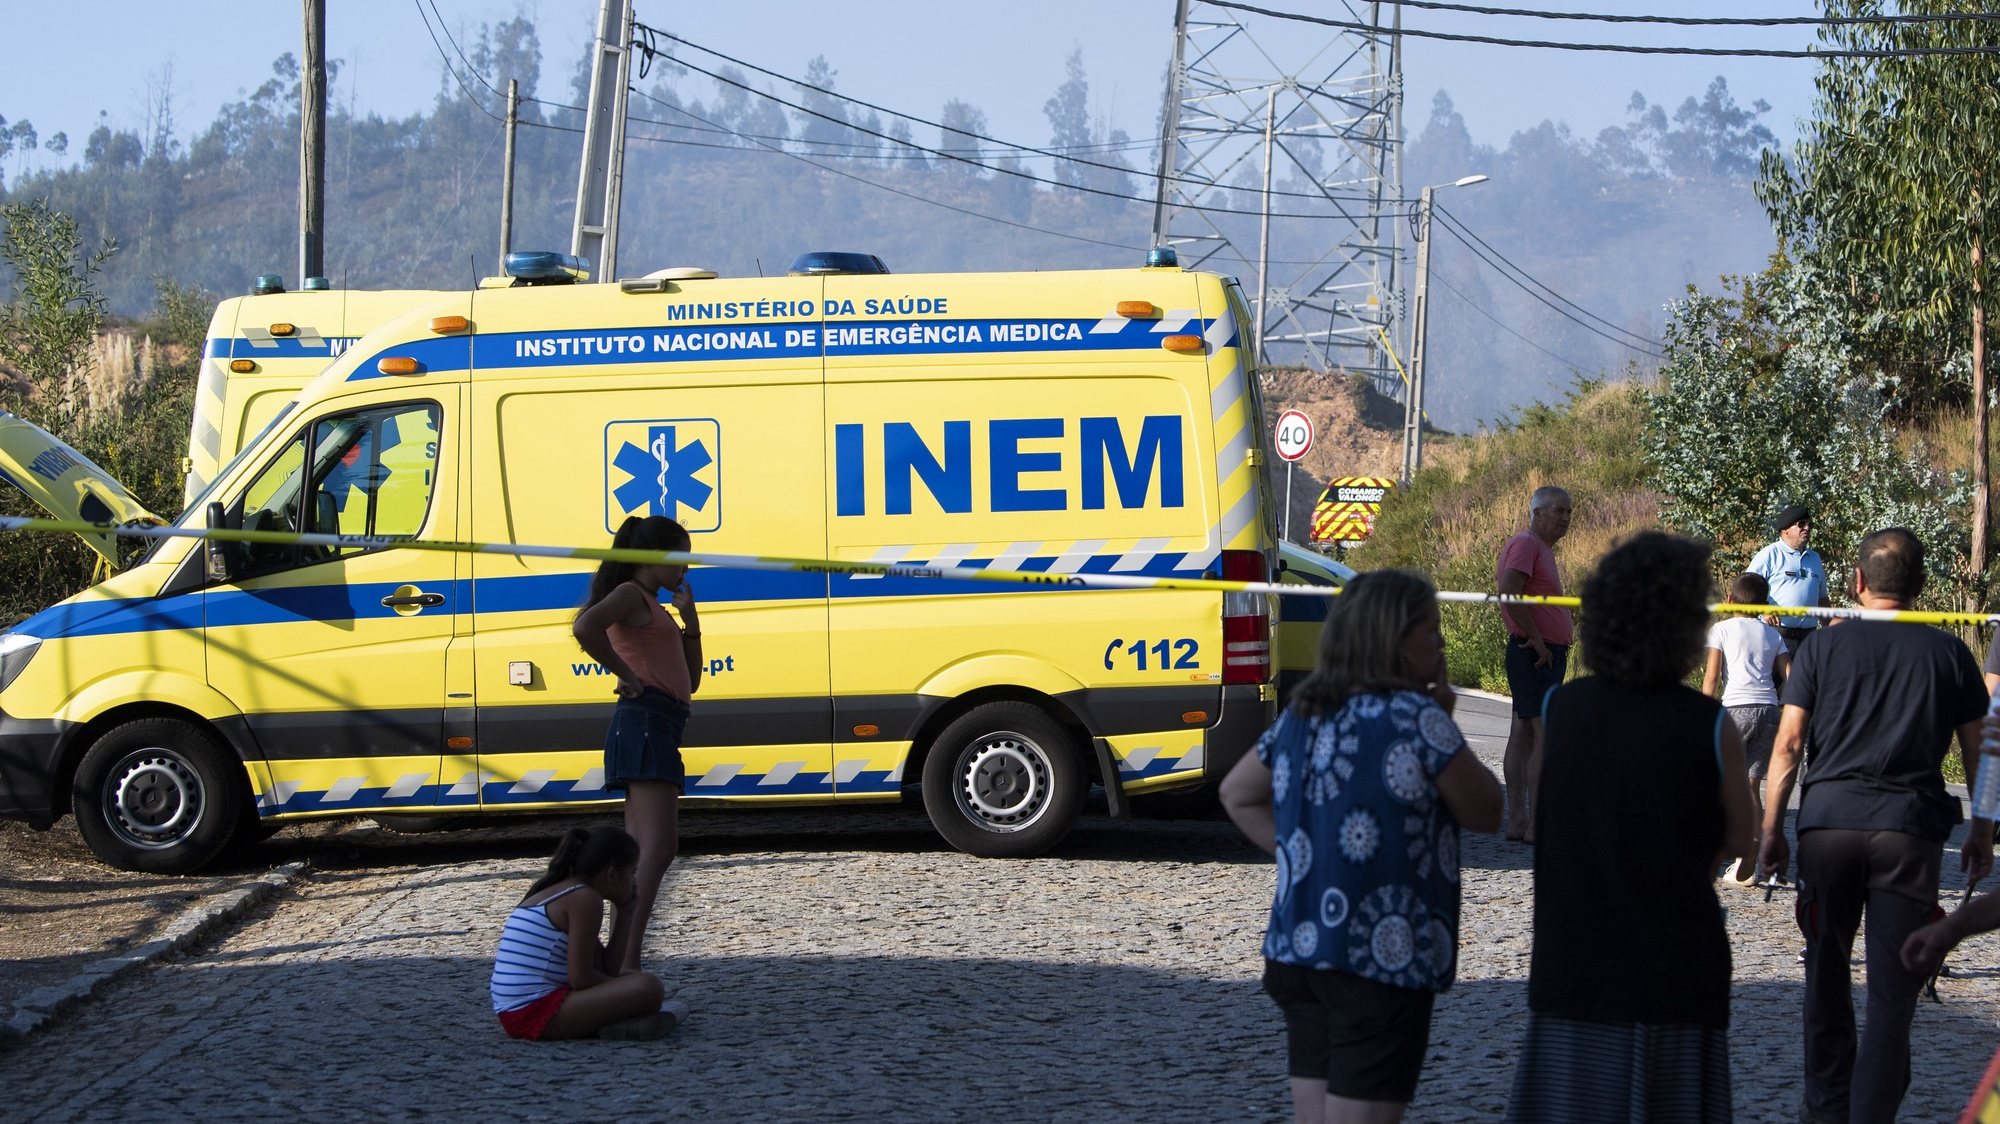 Ambulâncias do INEM junto do local onde caiu um helicóptero em Sobrado, Valongo, que causou a morte do piloto que comandava a aeronave, Valongo, 5 de setembro de 2019. RUI FARINHA/LUSA